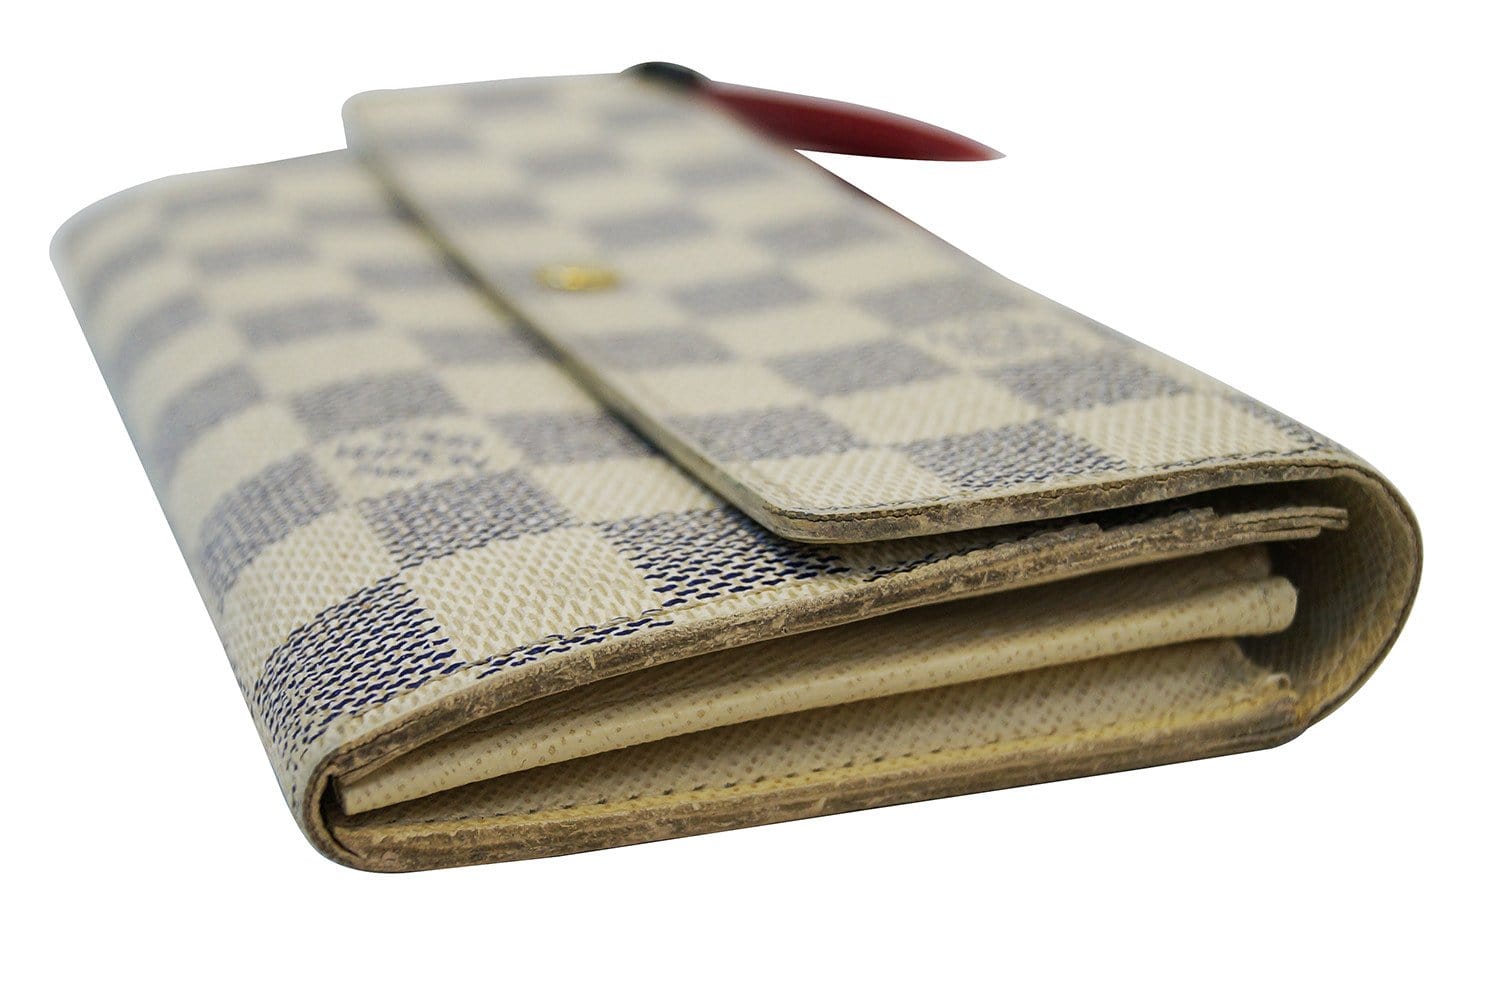 Louis Vuitton Damier Graphite Canvas Long Bifold Wallet Louis